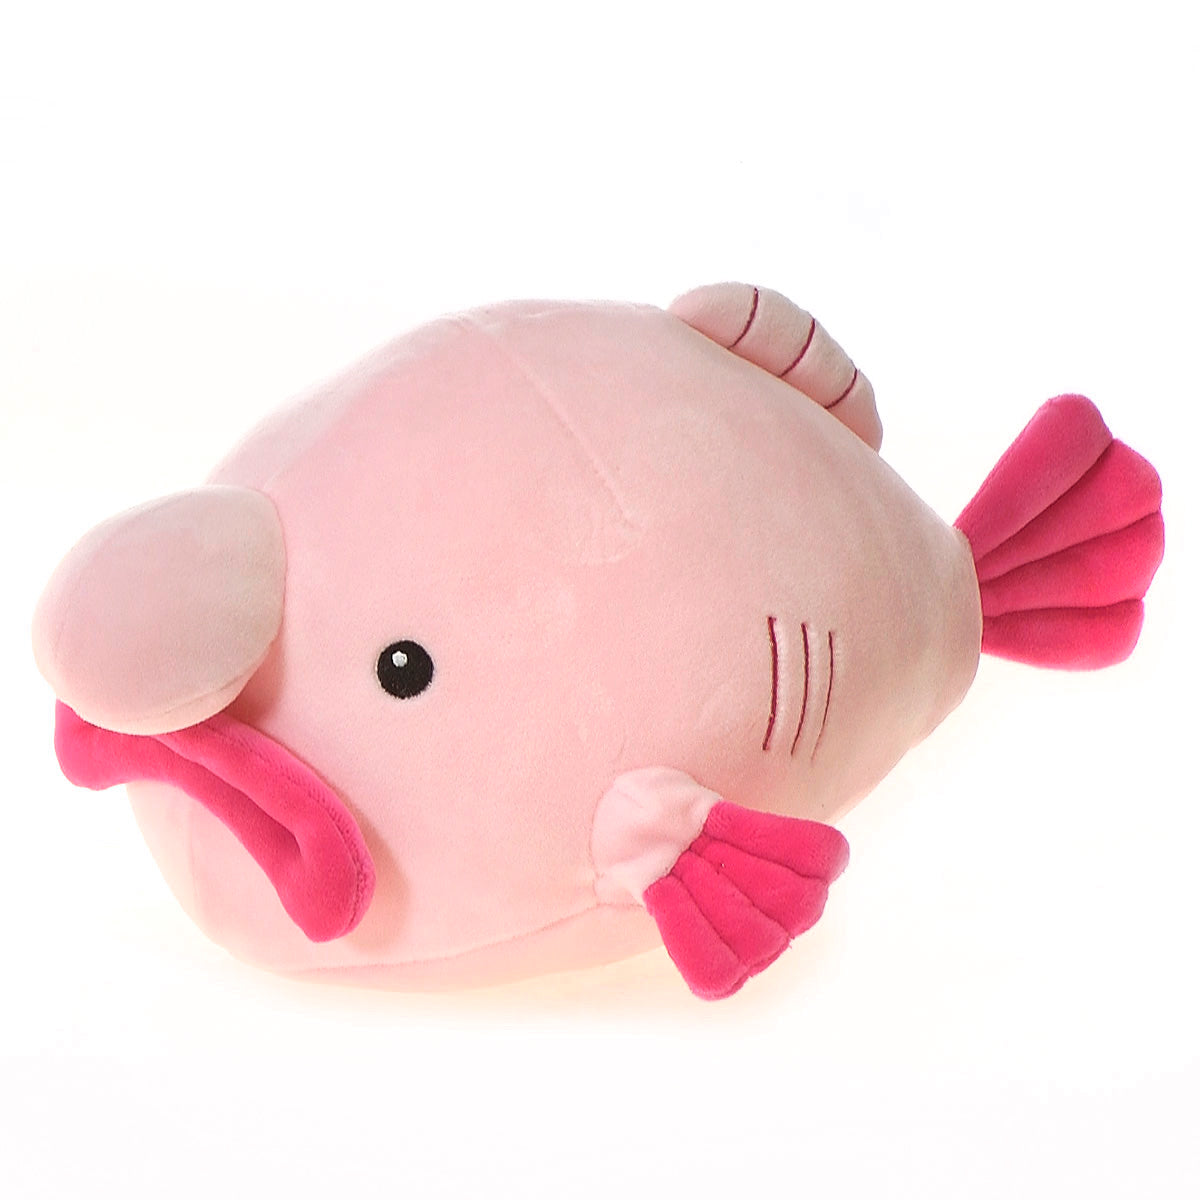 Shiny Plush Fish Toys